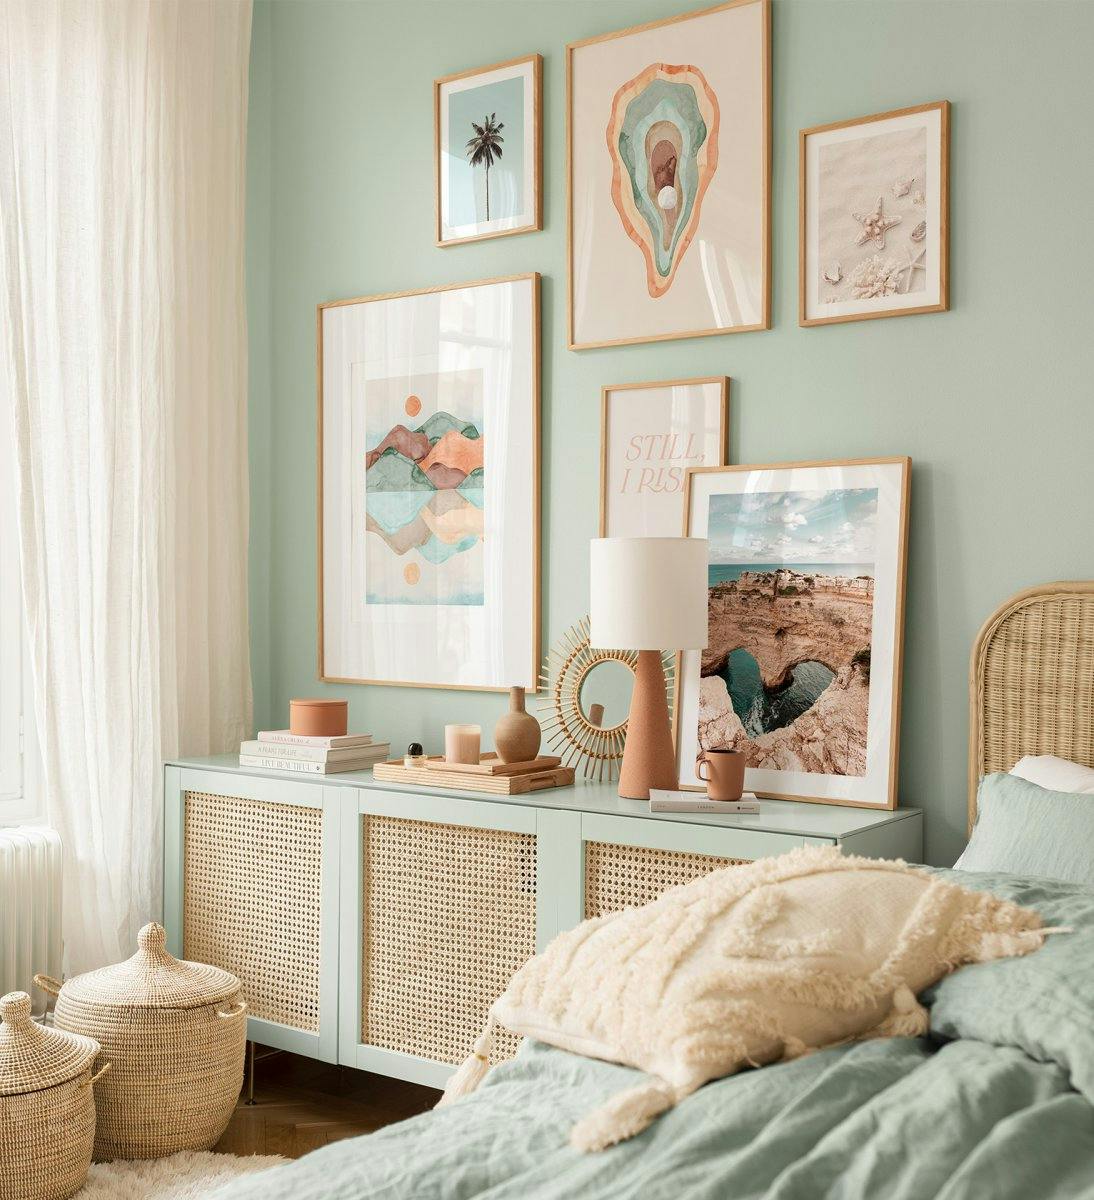 Farbenfrohe Bilder und Fotografien in verschiedenen Nuancen der Natur für das Schlafzimmer oder Wohnzimmer